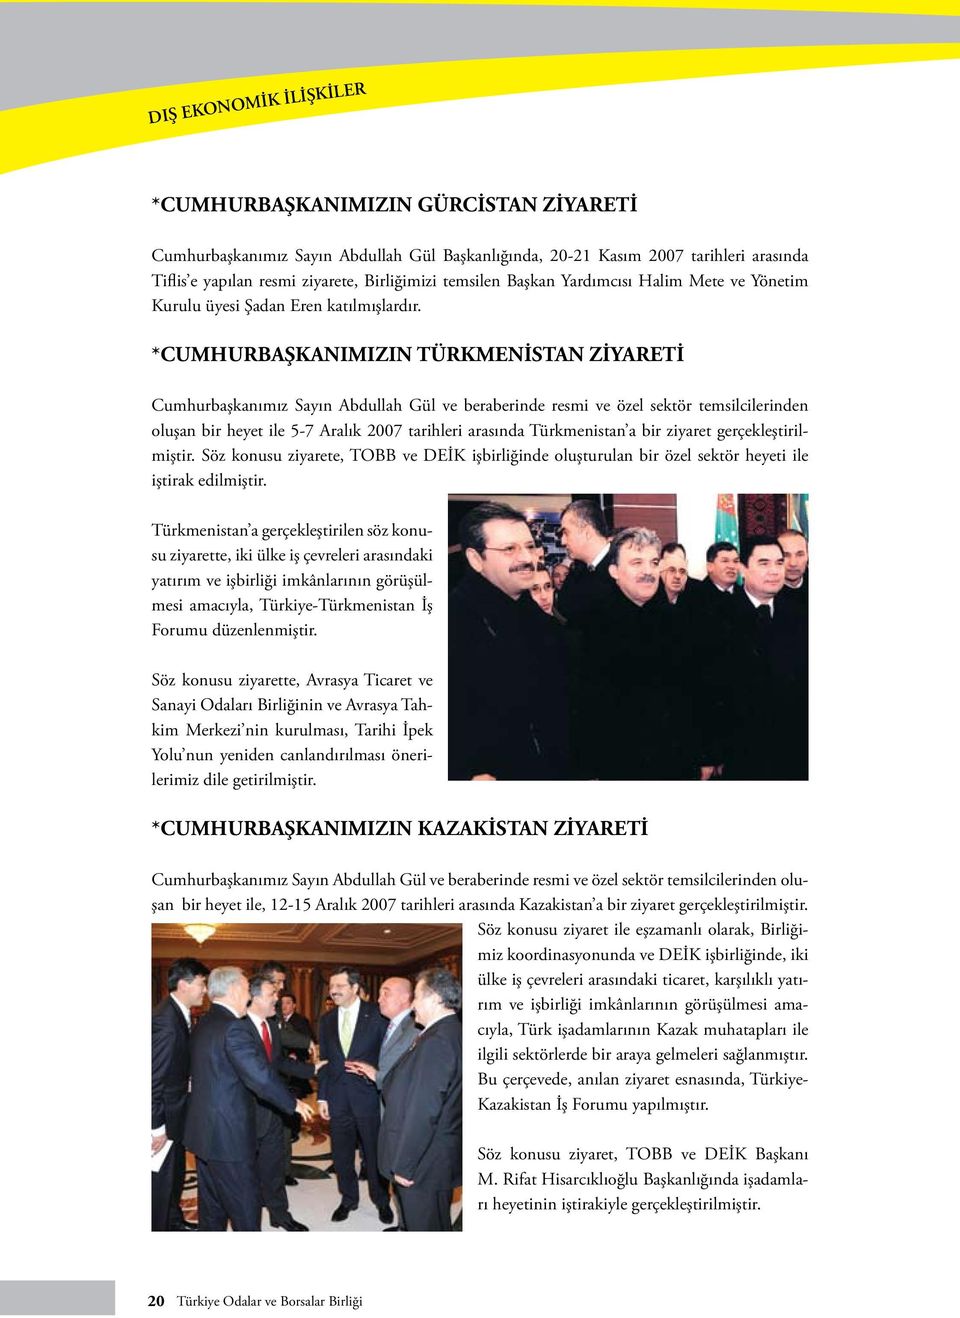 *CUMHURBAŞKANIMIZIN TÜRKMENİSTAN ZİYARETİ Cumhurbaşkanımız Sayın Abdullah Gül ve beraberinde resmi ve özel sektör temsilcilerinden oluşan bir heyet ile 5-7 Aralık 2007 tarihleri arasında Türkmenistan